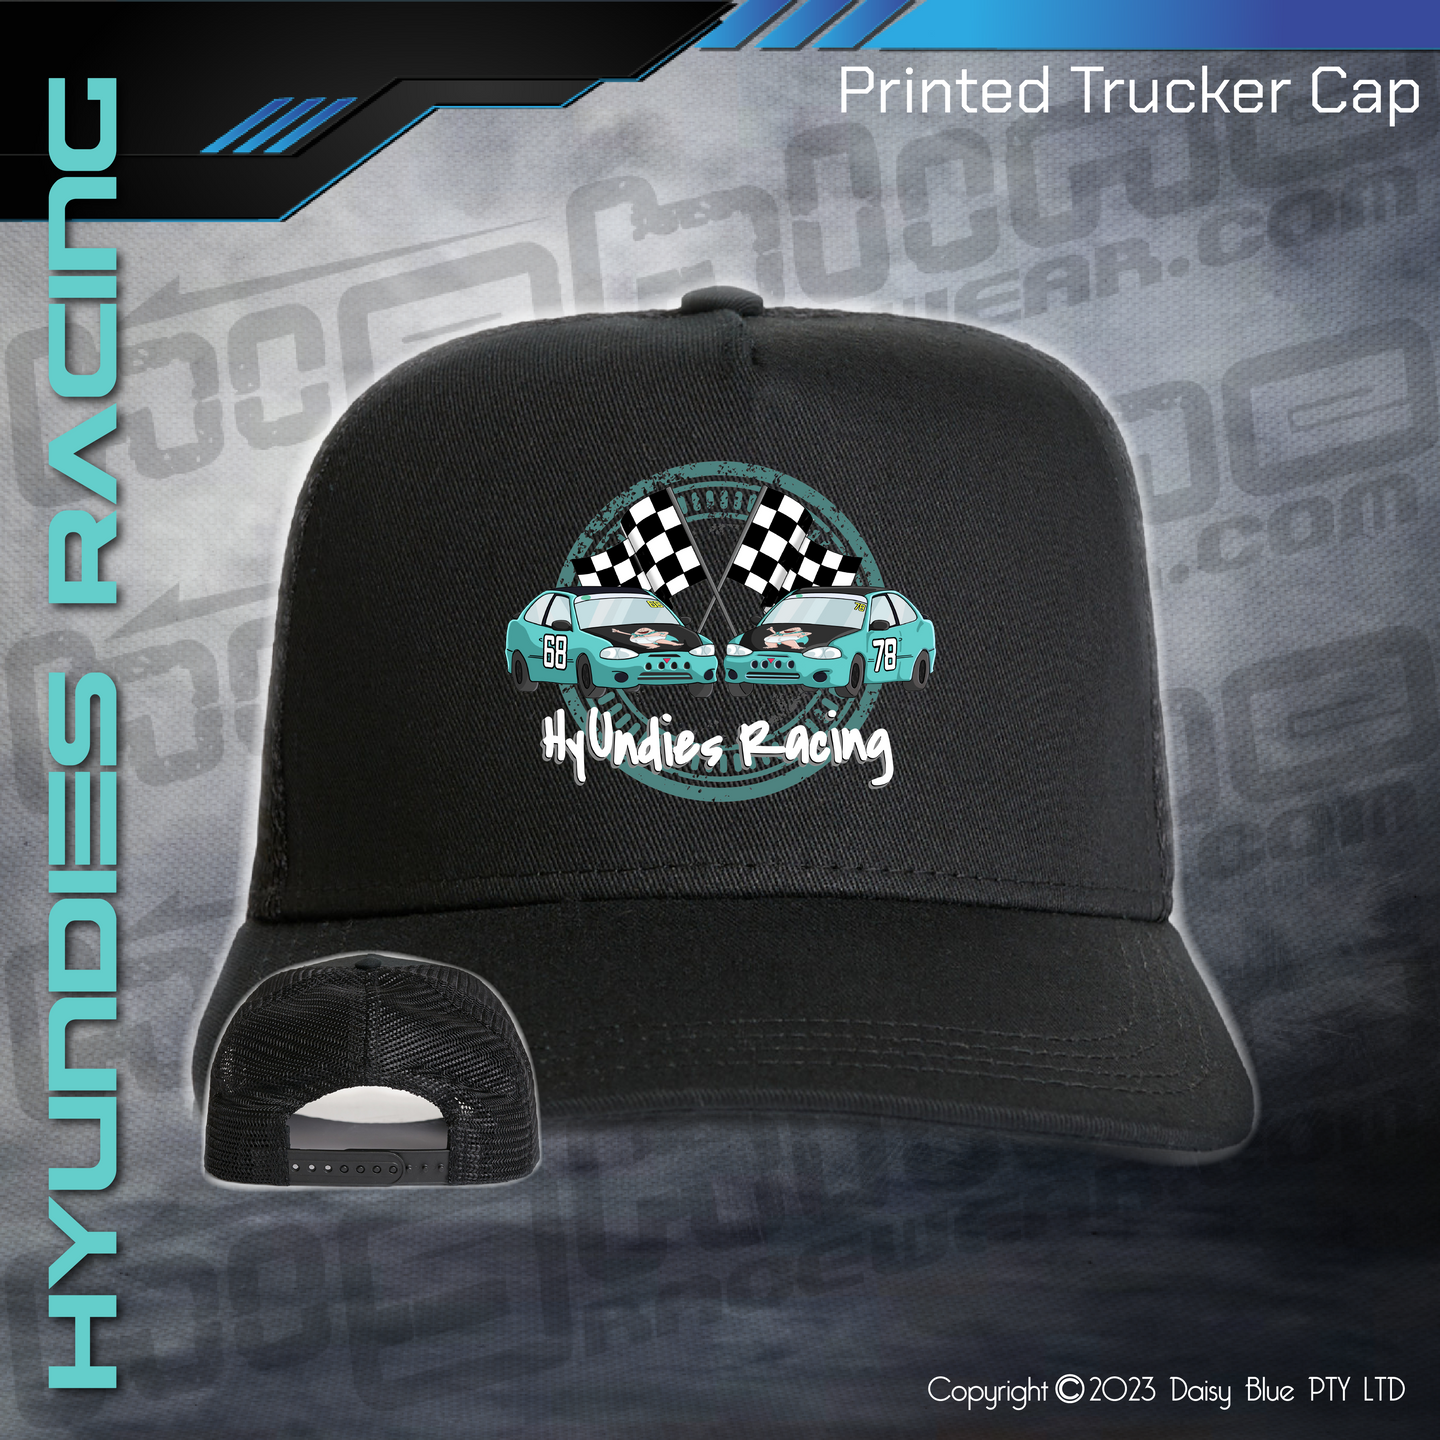 Printed Trucker Cap - Hyundies Racing